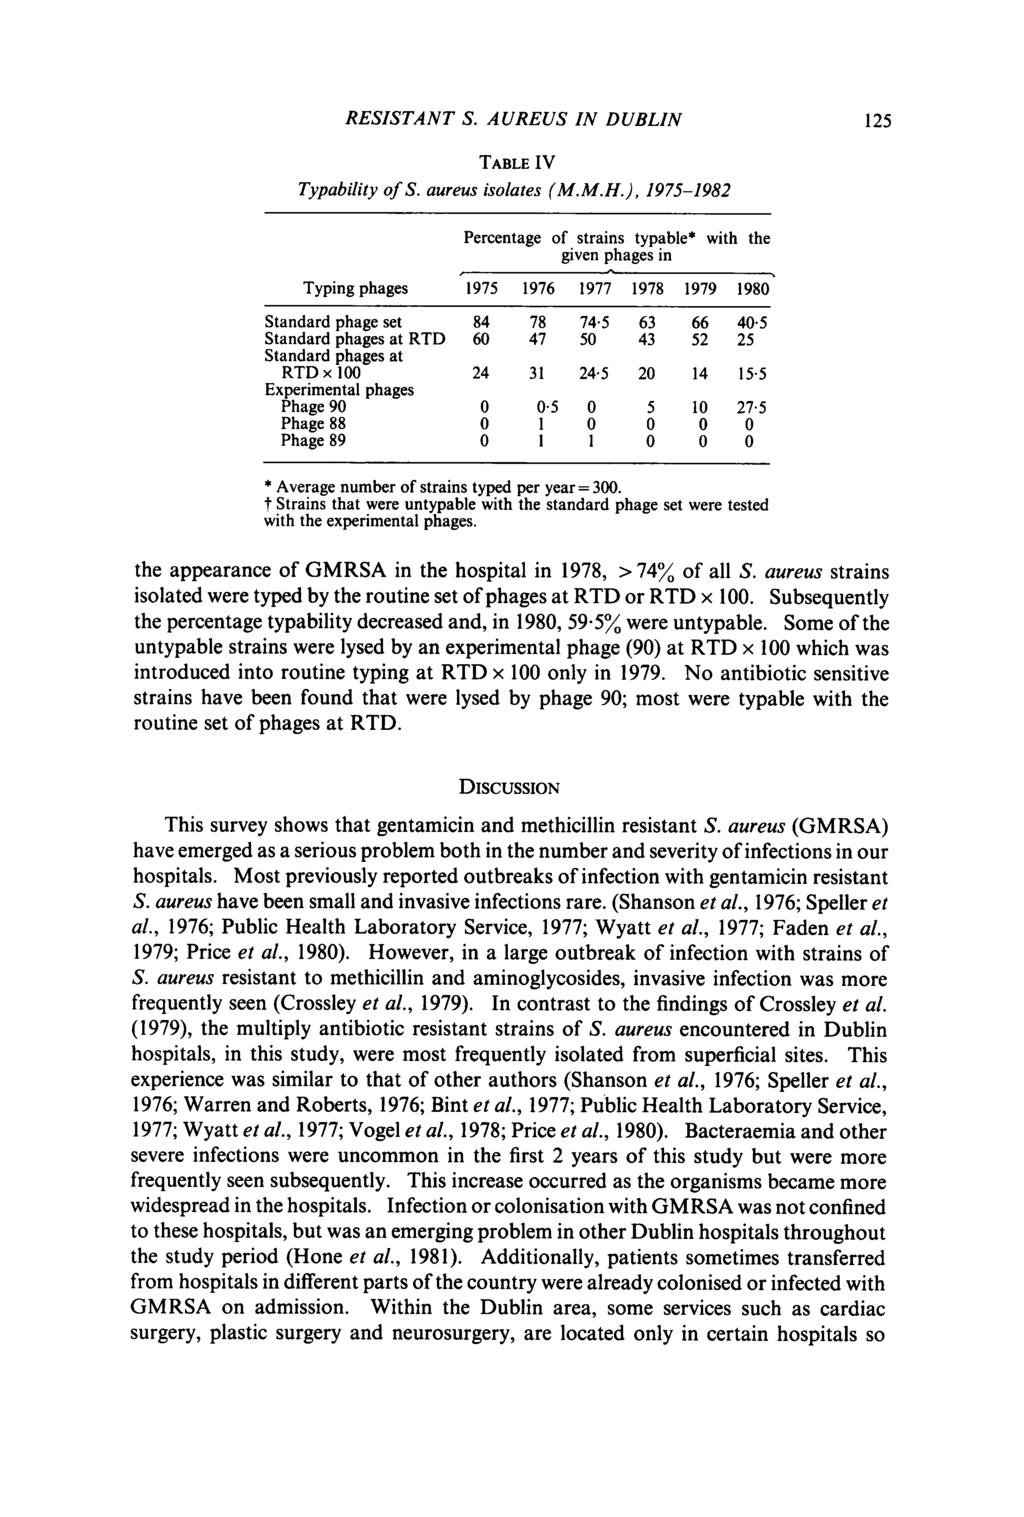 RESSTANT S. AUREUS N DUBLN 125 TABLE V Typability of S. aureus isolates (M.M.H.